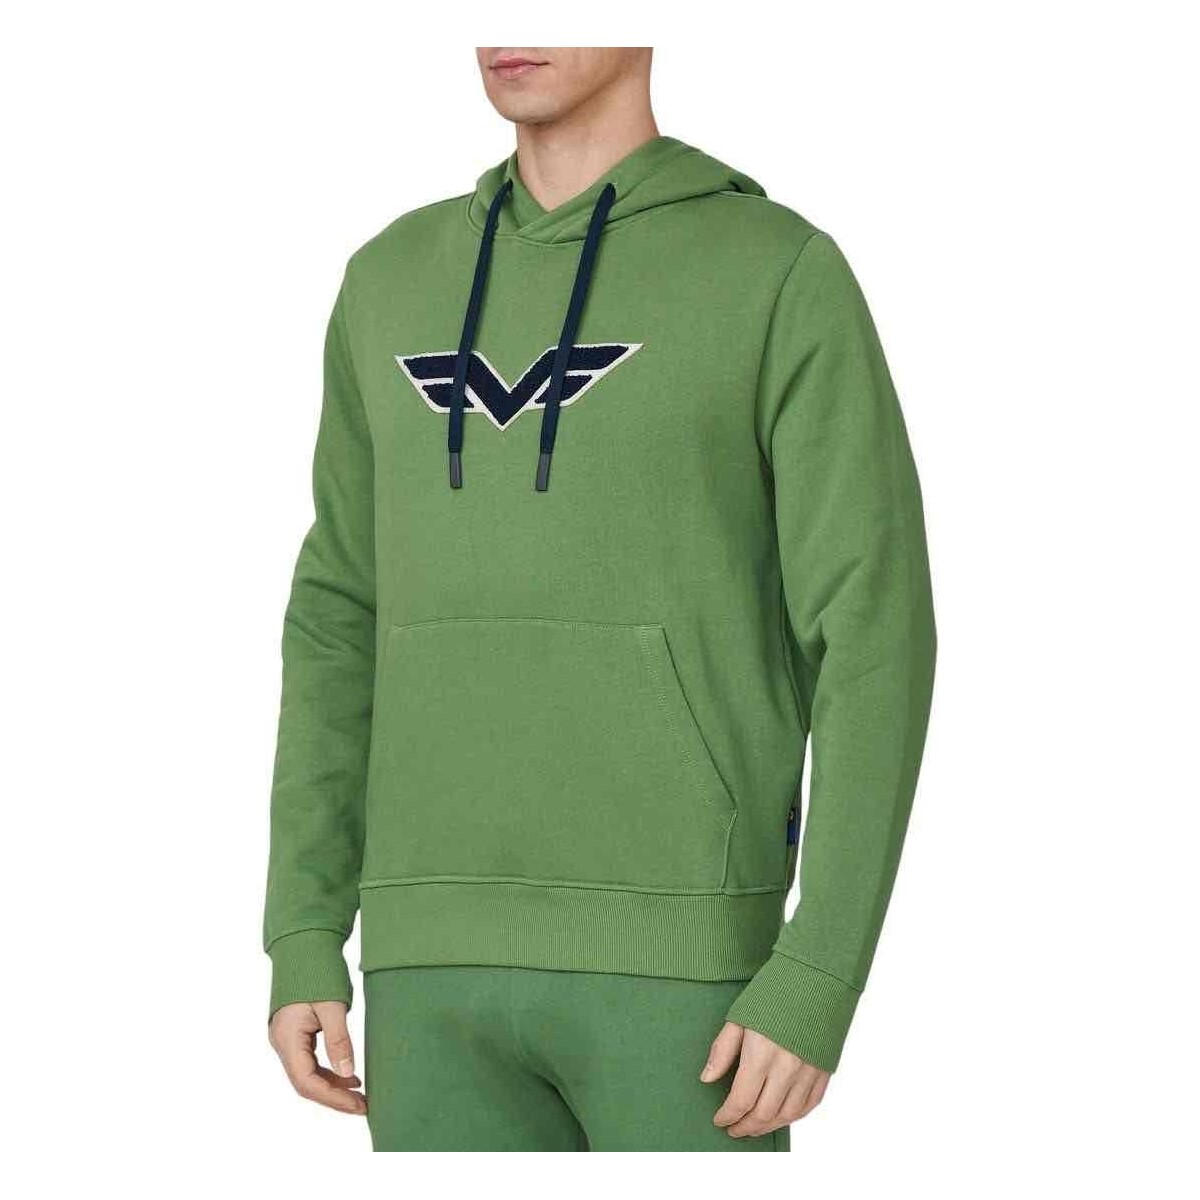 Textiel Heren Sweaters / Sweatshirts Armata Di Mare  Groen